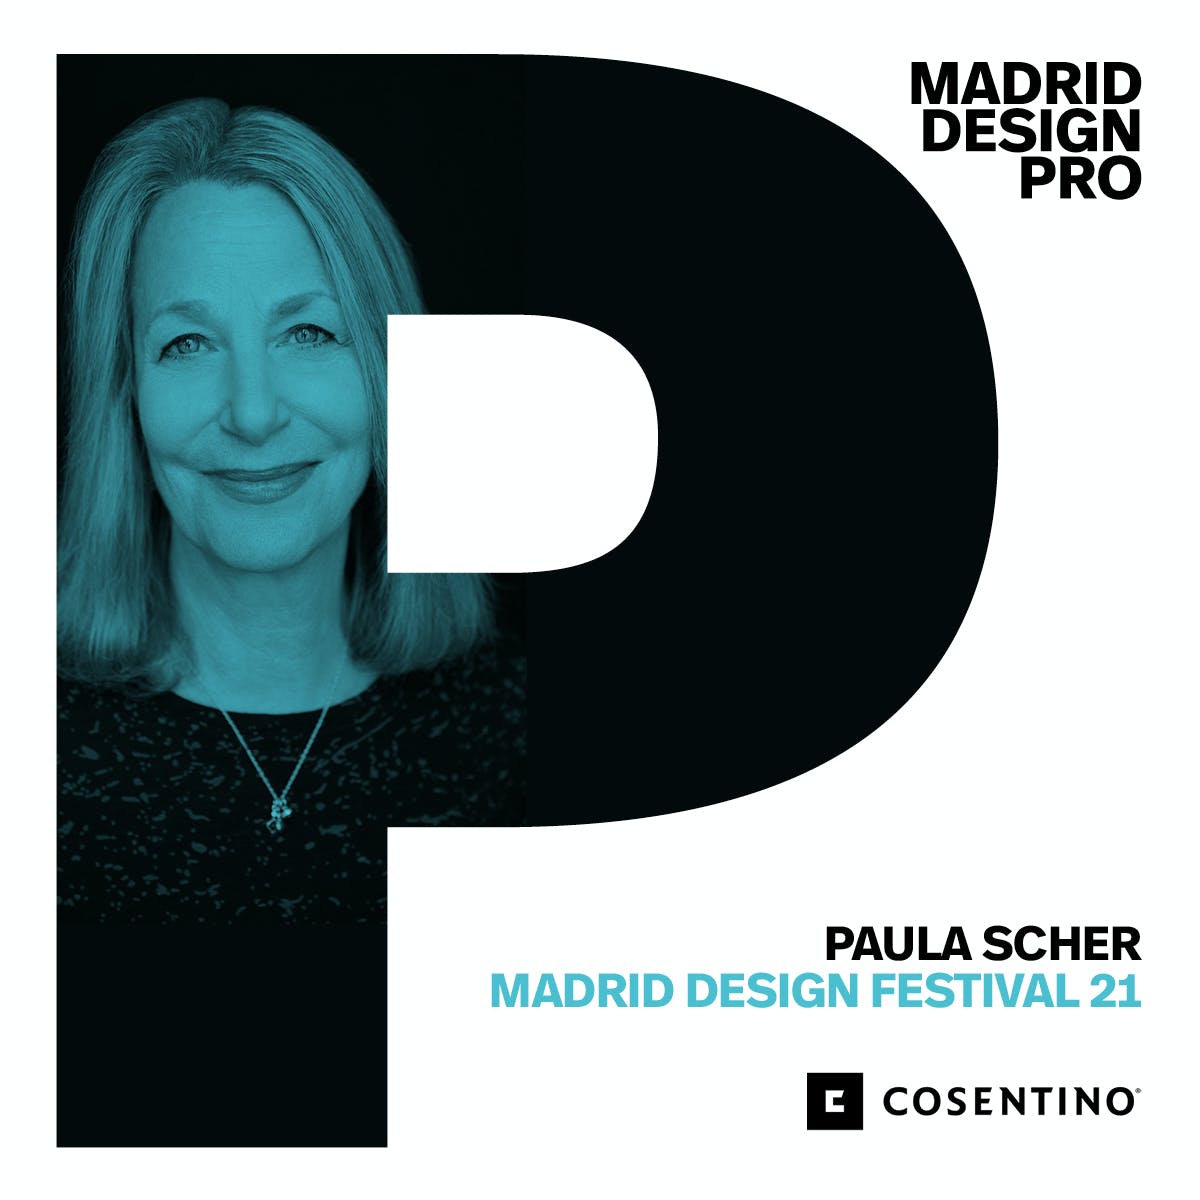 Image 36 of MDPRO COSENTINO 3 in Cosentino at the Madrid Design Festival 2021 - Cosentino